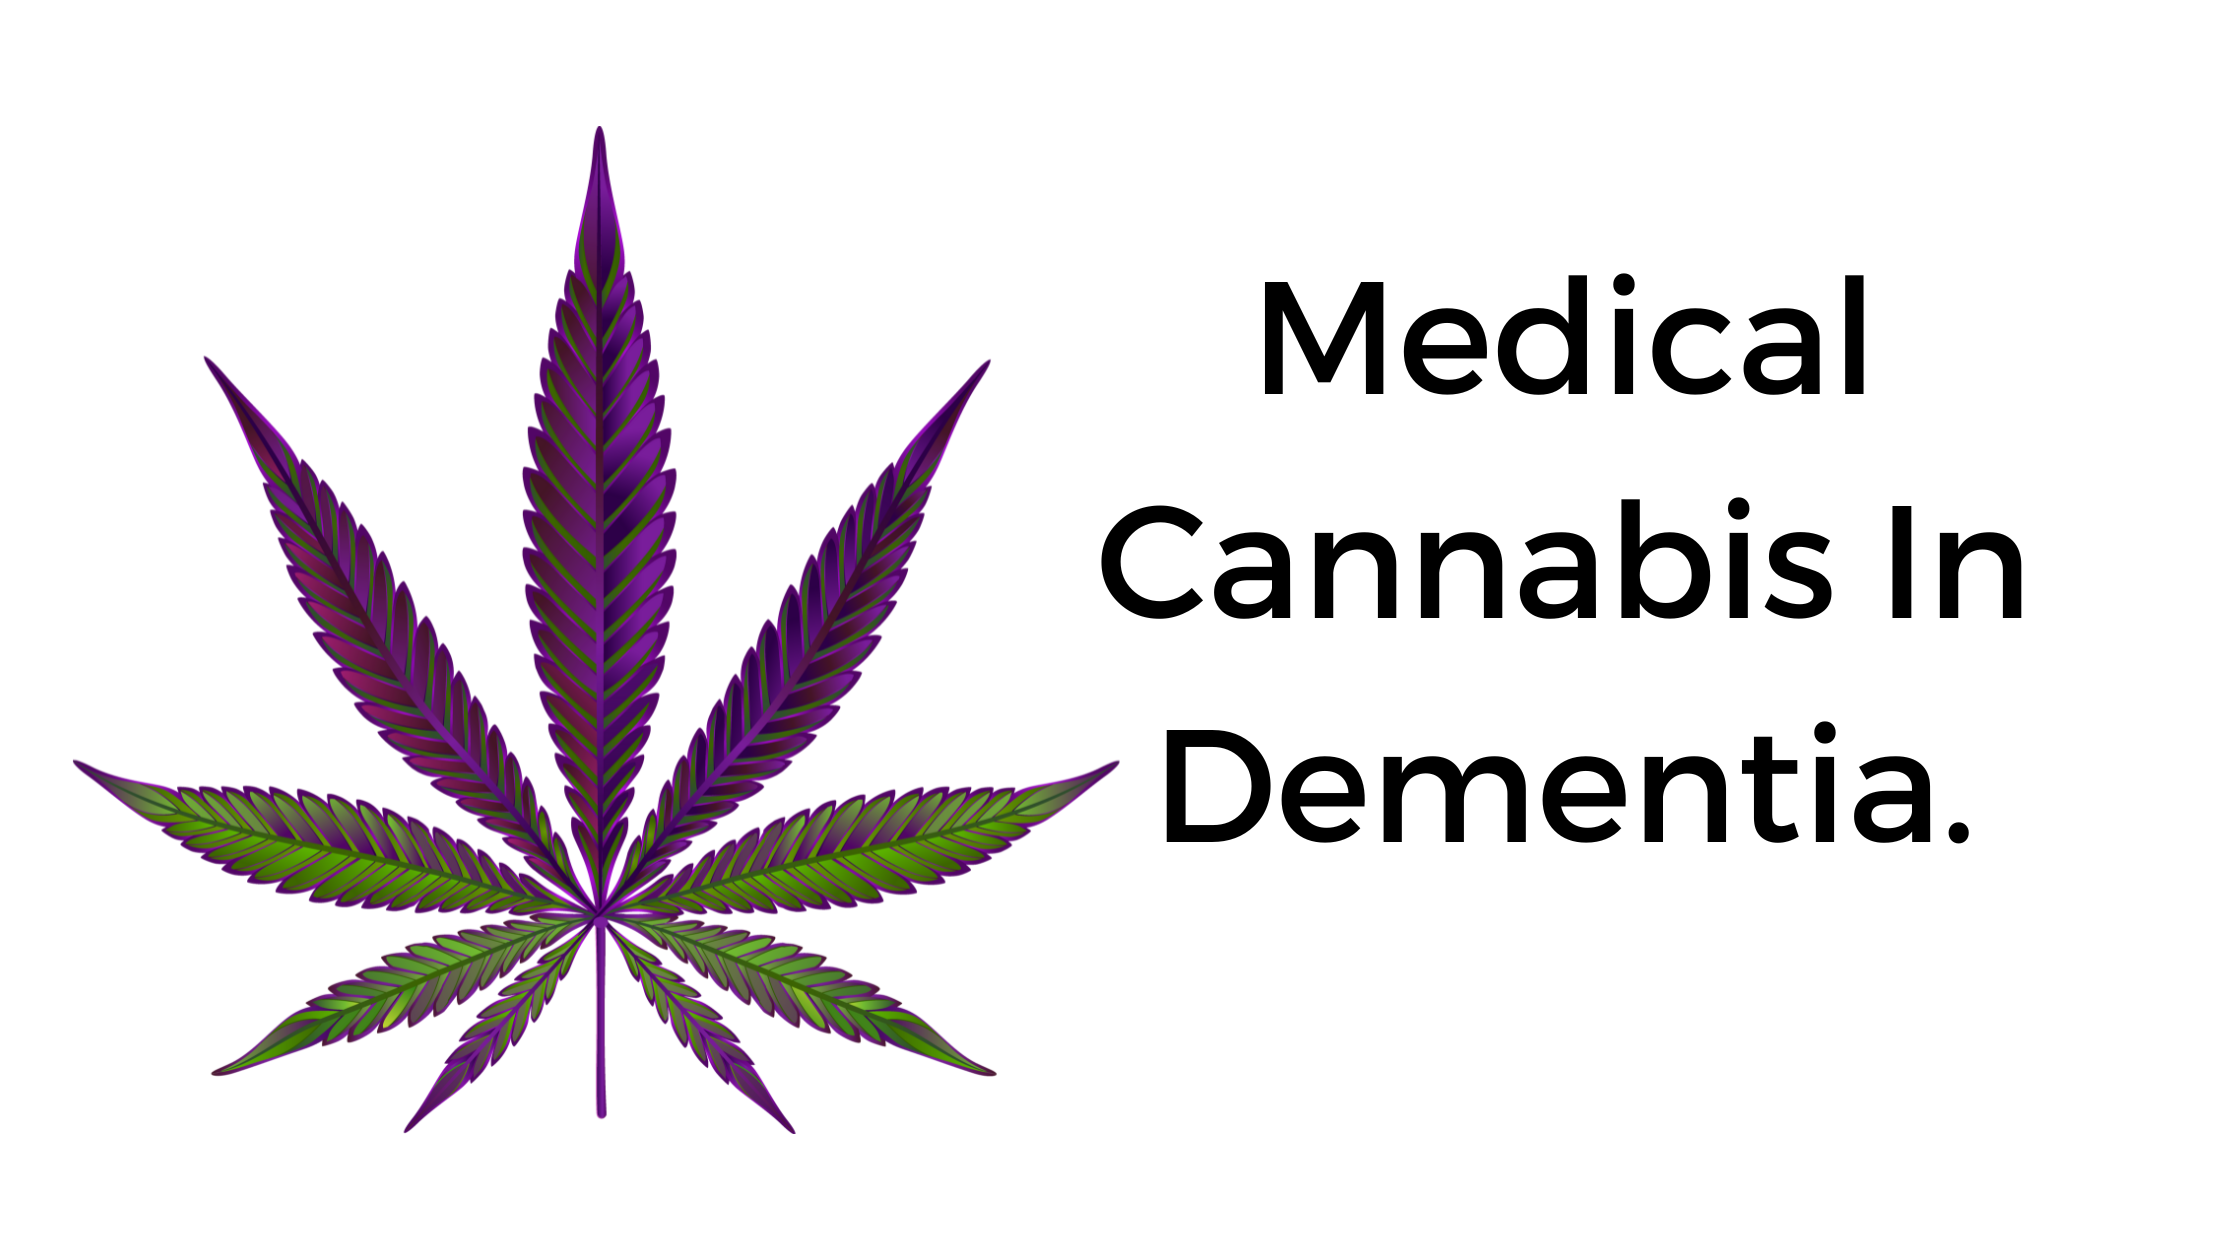 Medical Cannabis In Dementia